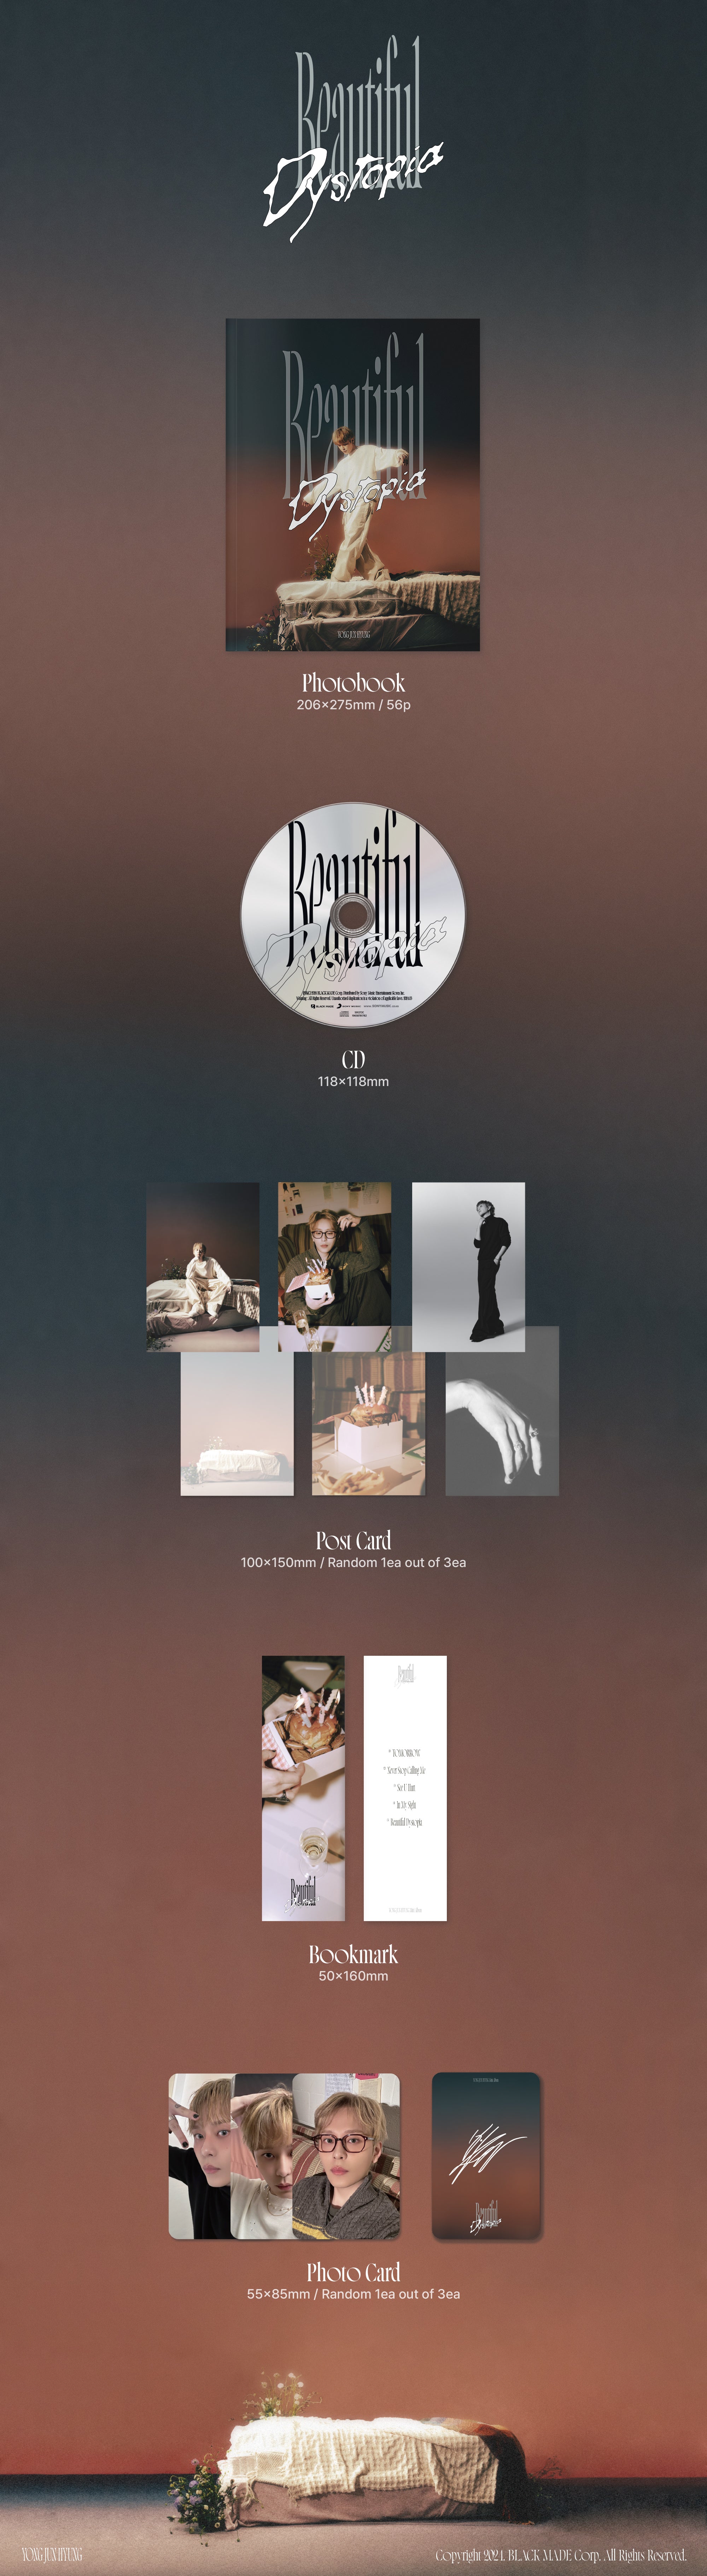 YONG JUNHYUNG ALBUM 'BEAUTIFUL DYSTOPIA' DETAIL